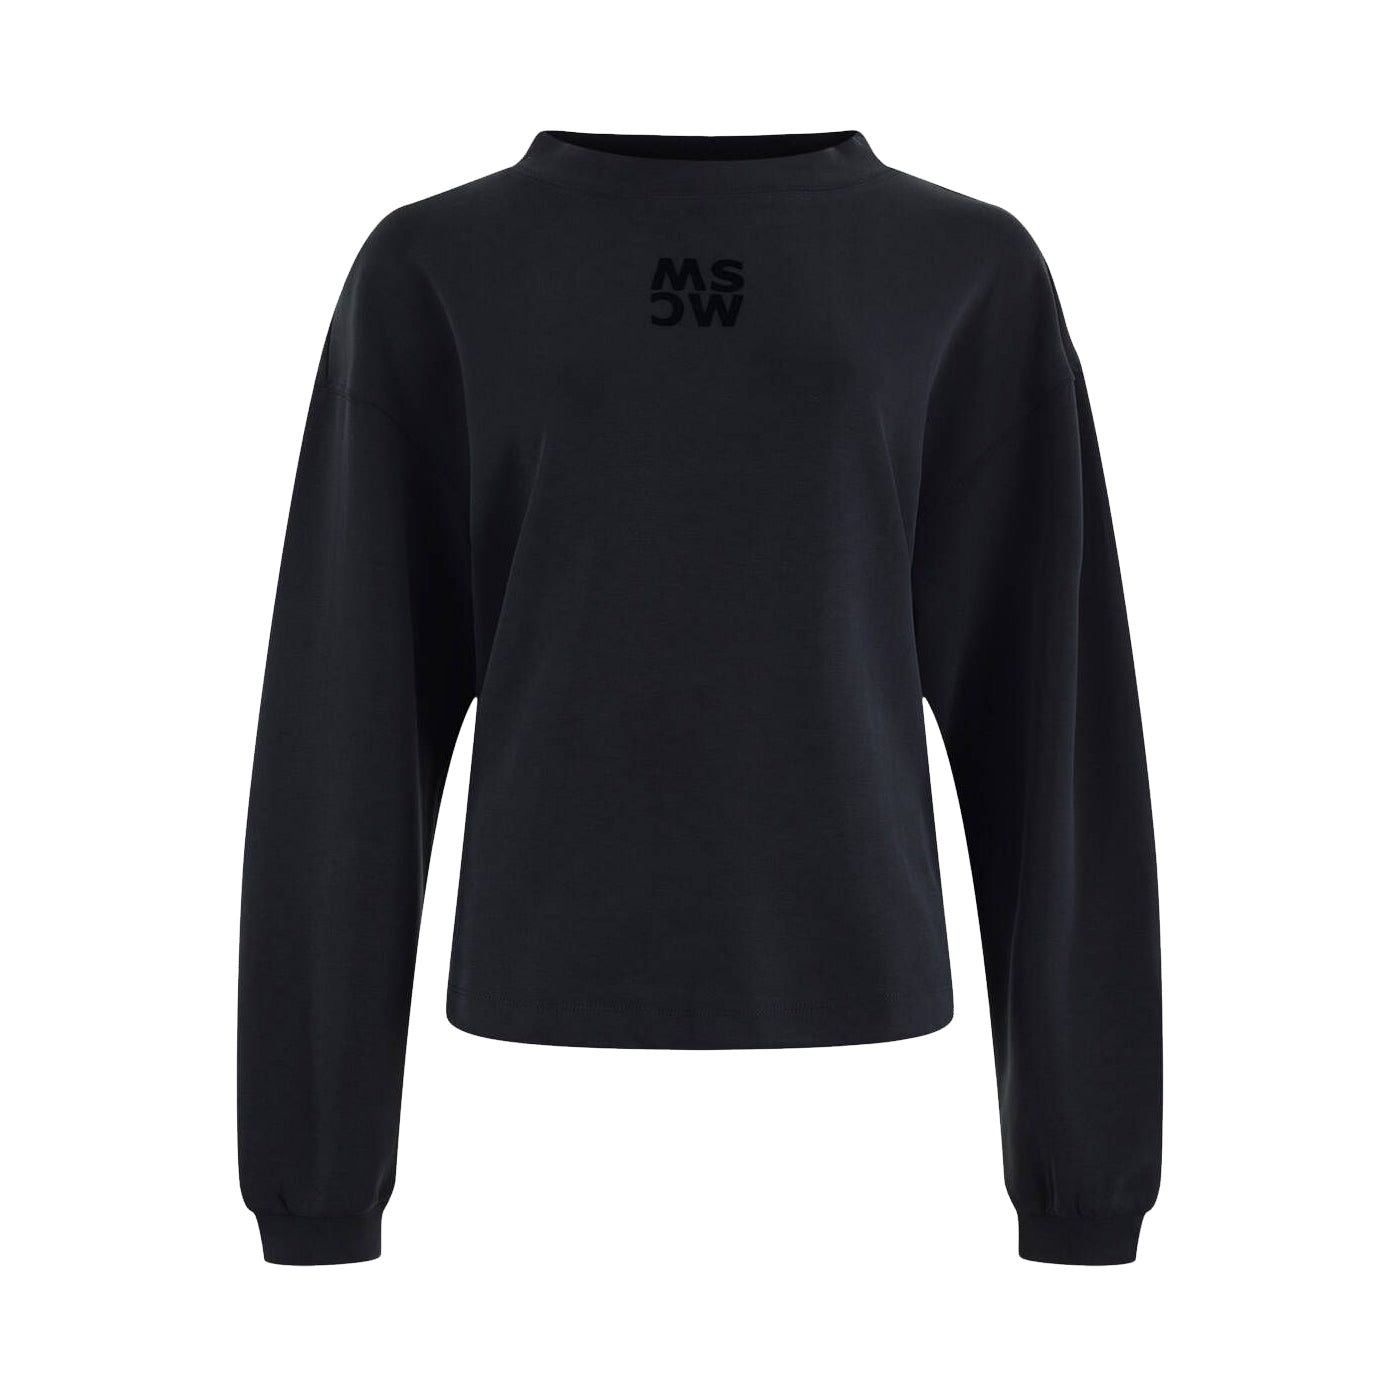 Moscow Design Pullover Randy in schwarz. Sweater in weicher Modal Techno Qualität von MSCW fashion online kaufen. Sportiver Street Wear Pullover mit modisch weiten Ärmeln aus der neuen Moscow Desgn Mode Kollektion.